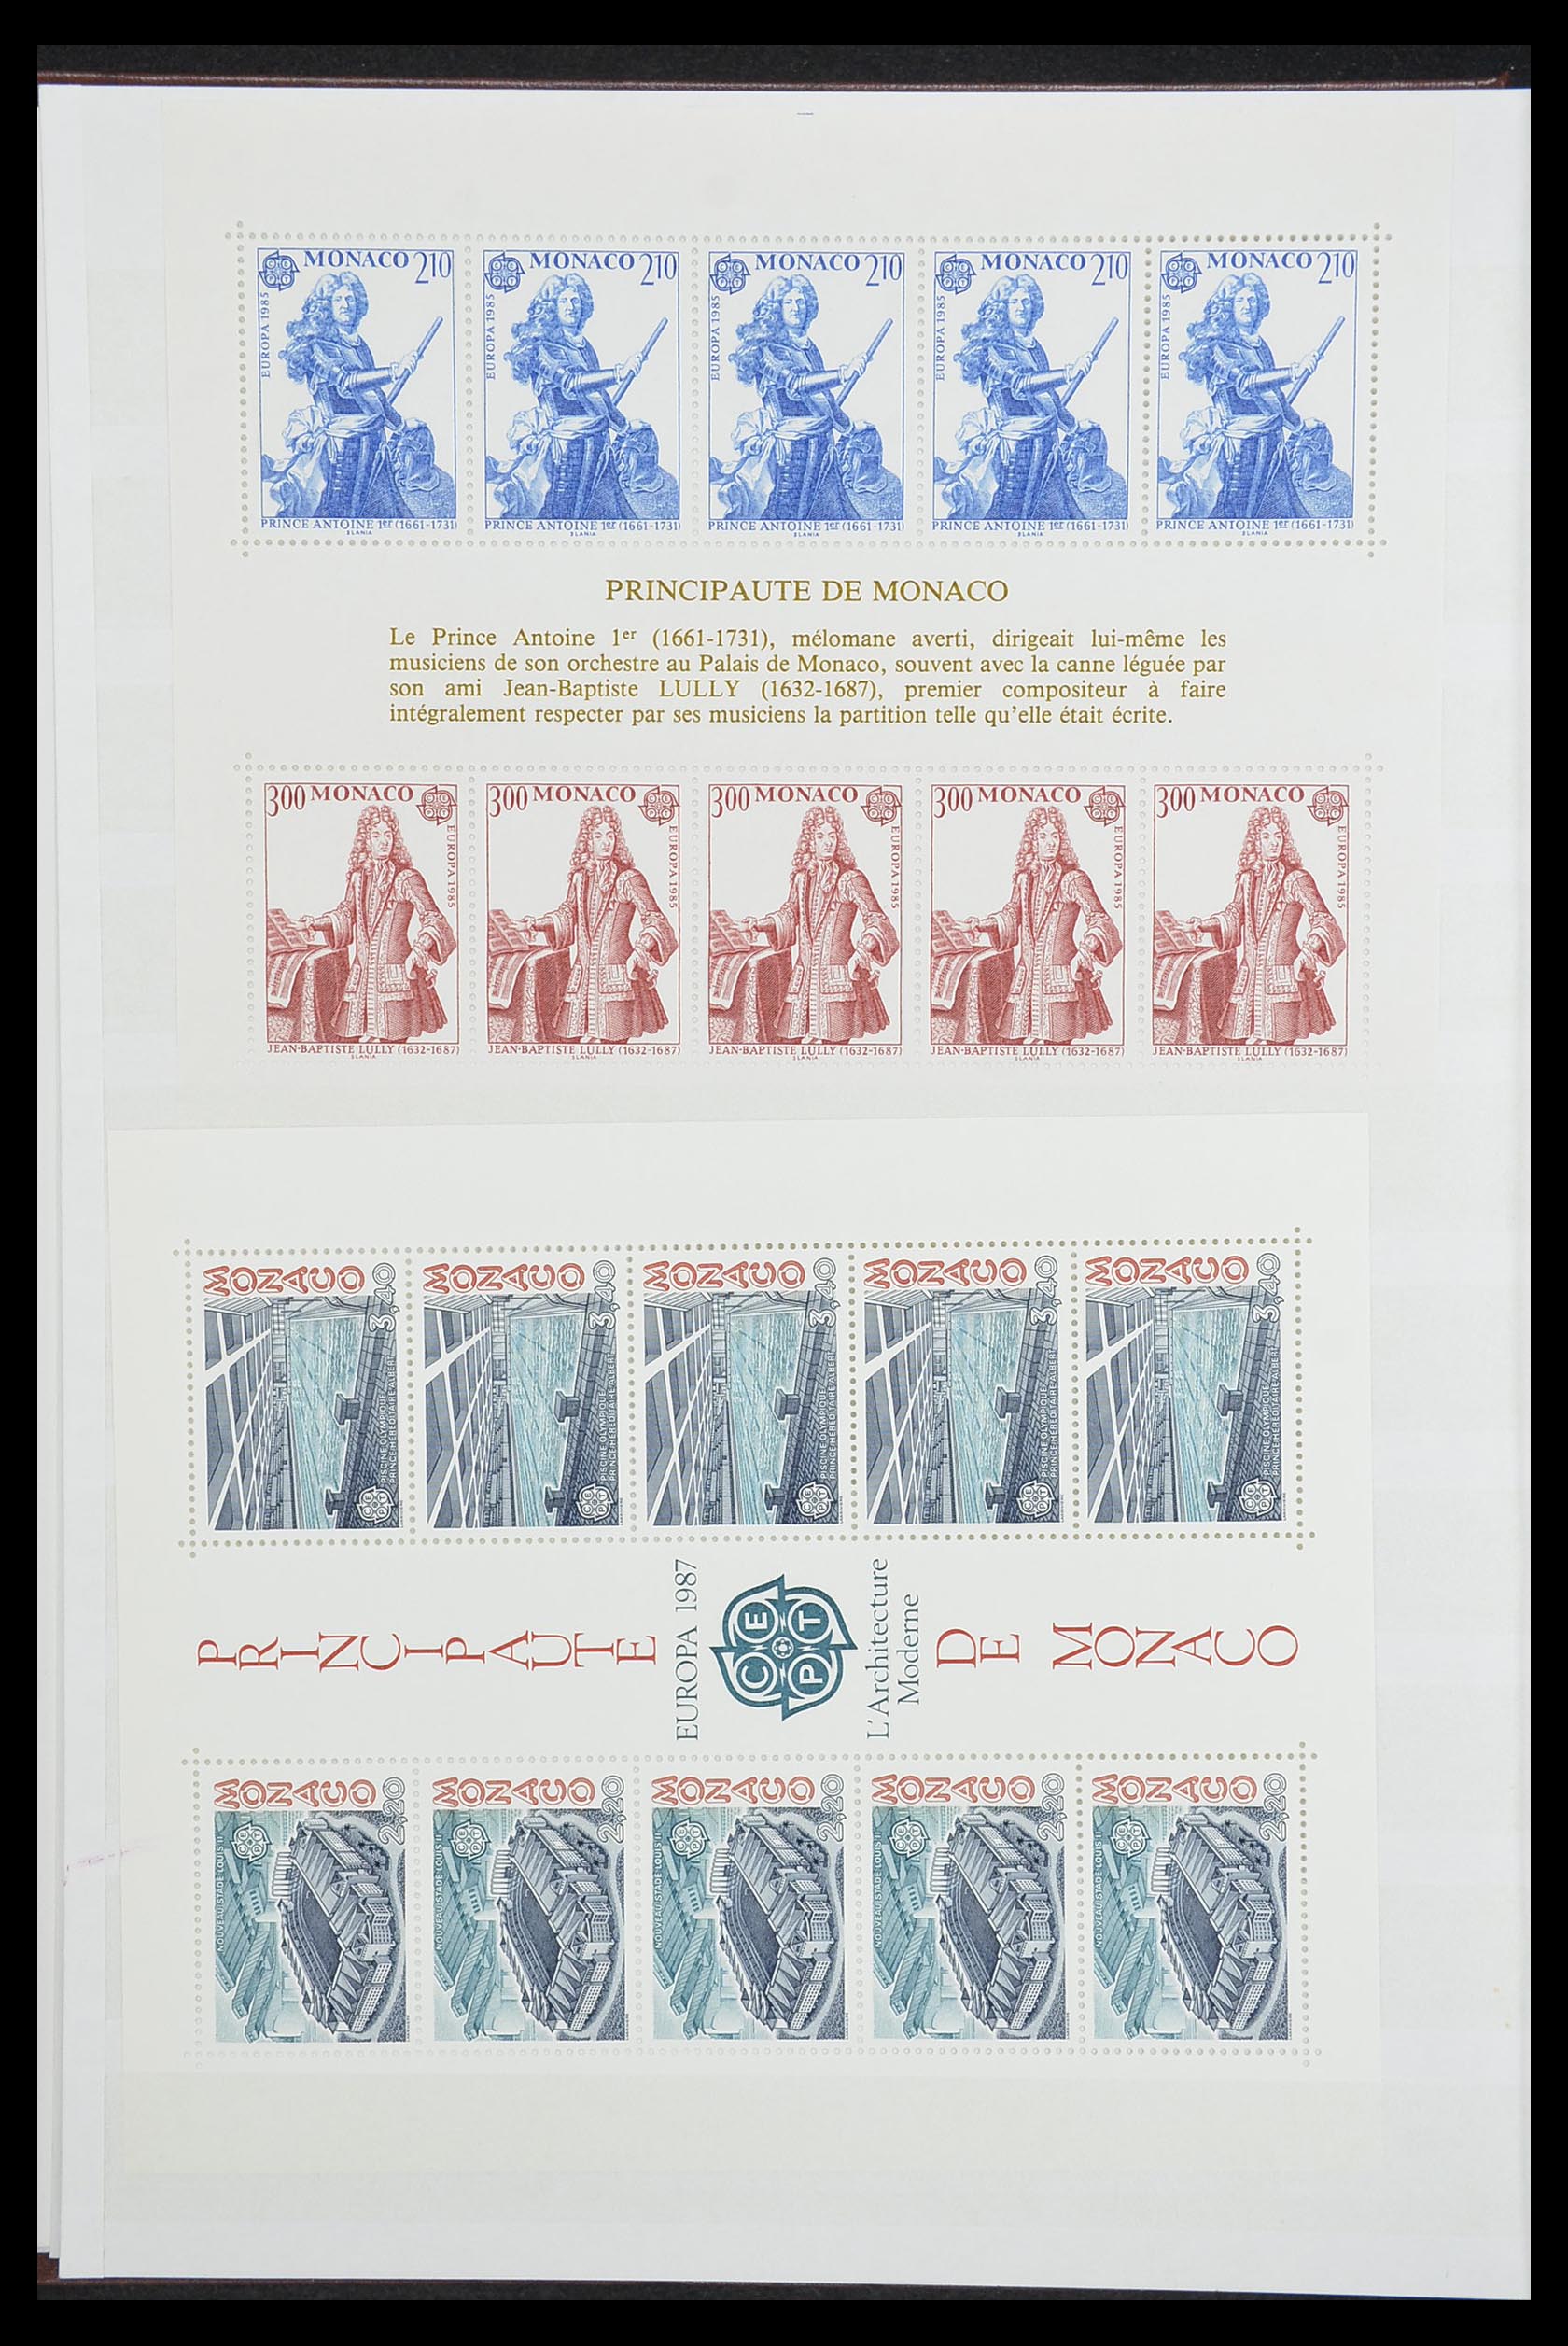 33833 004 - Stamp collection 33833 Monaco souvenir sheets 1979-2015.